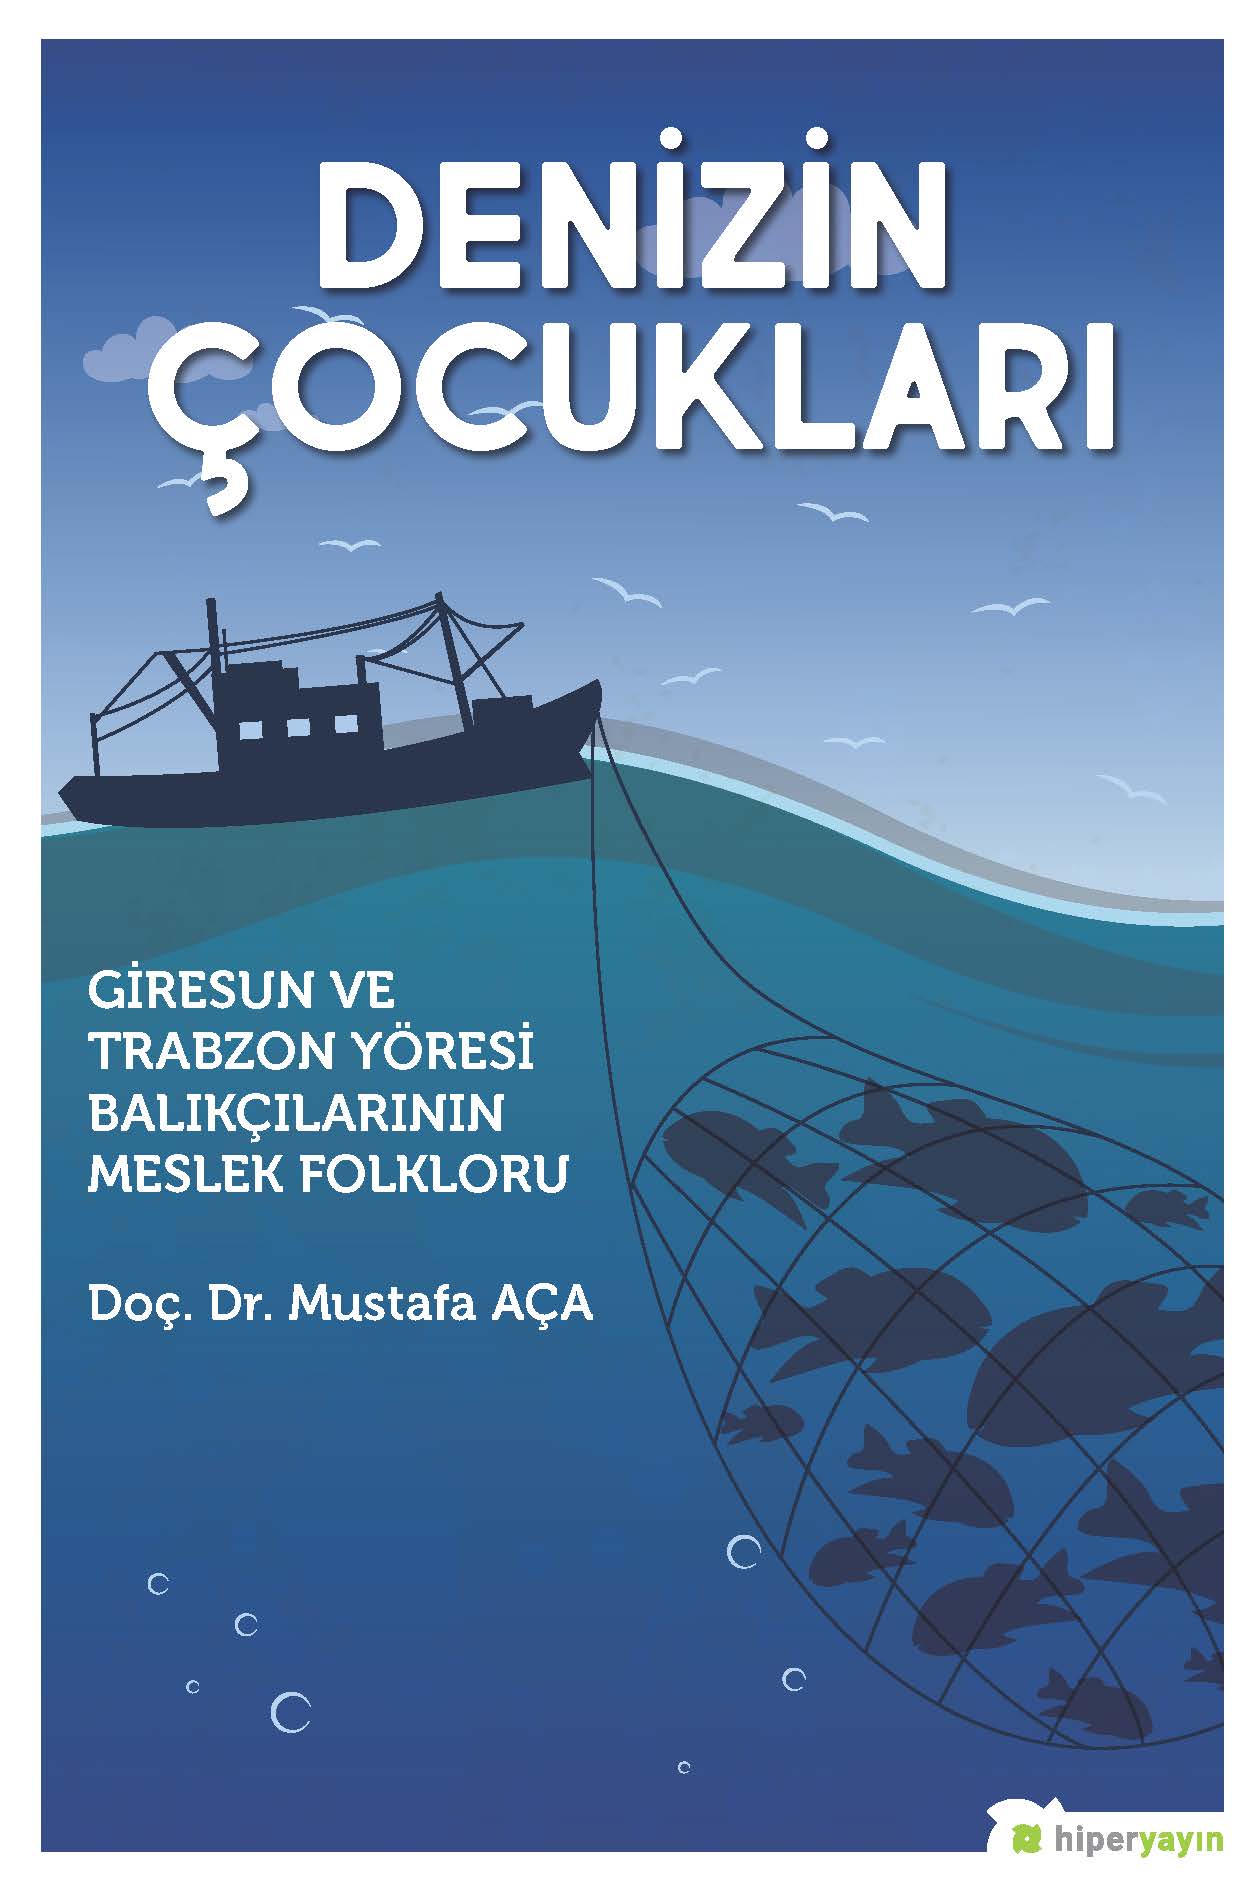 Denizin Çocukları “Giresun ve Trabzon Yöresi Balıkçılarının Meslek Folkloru”